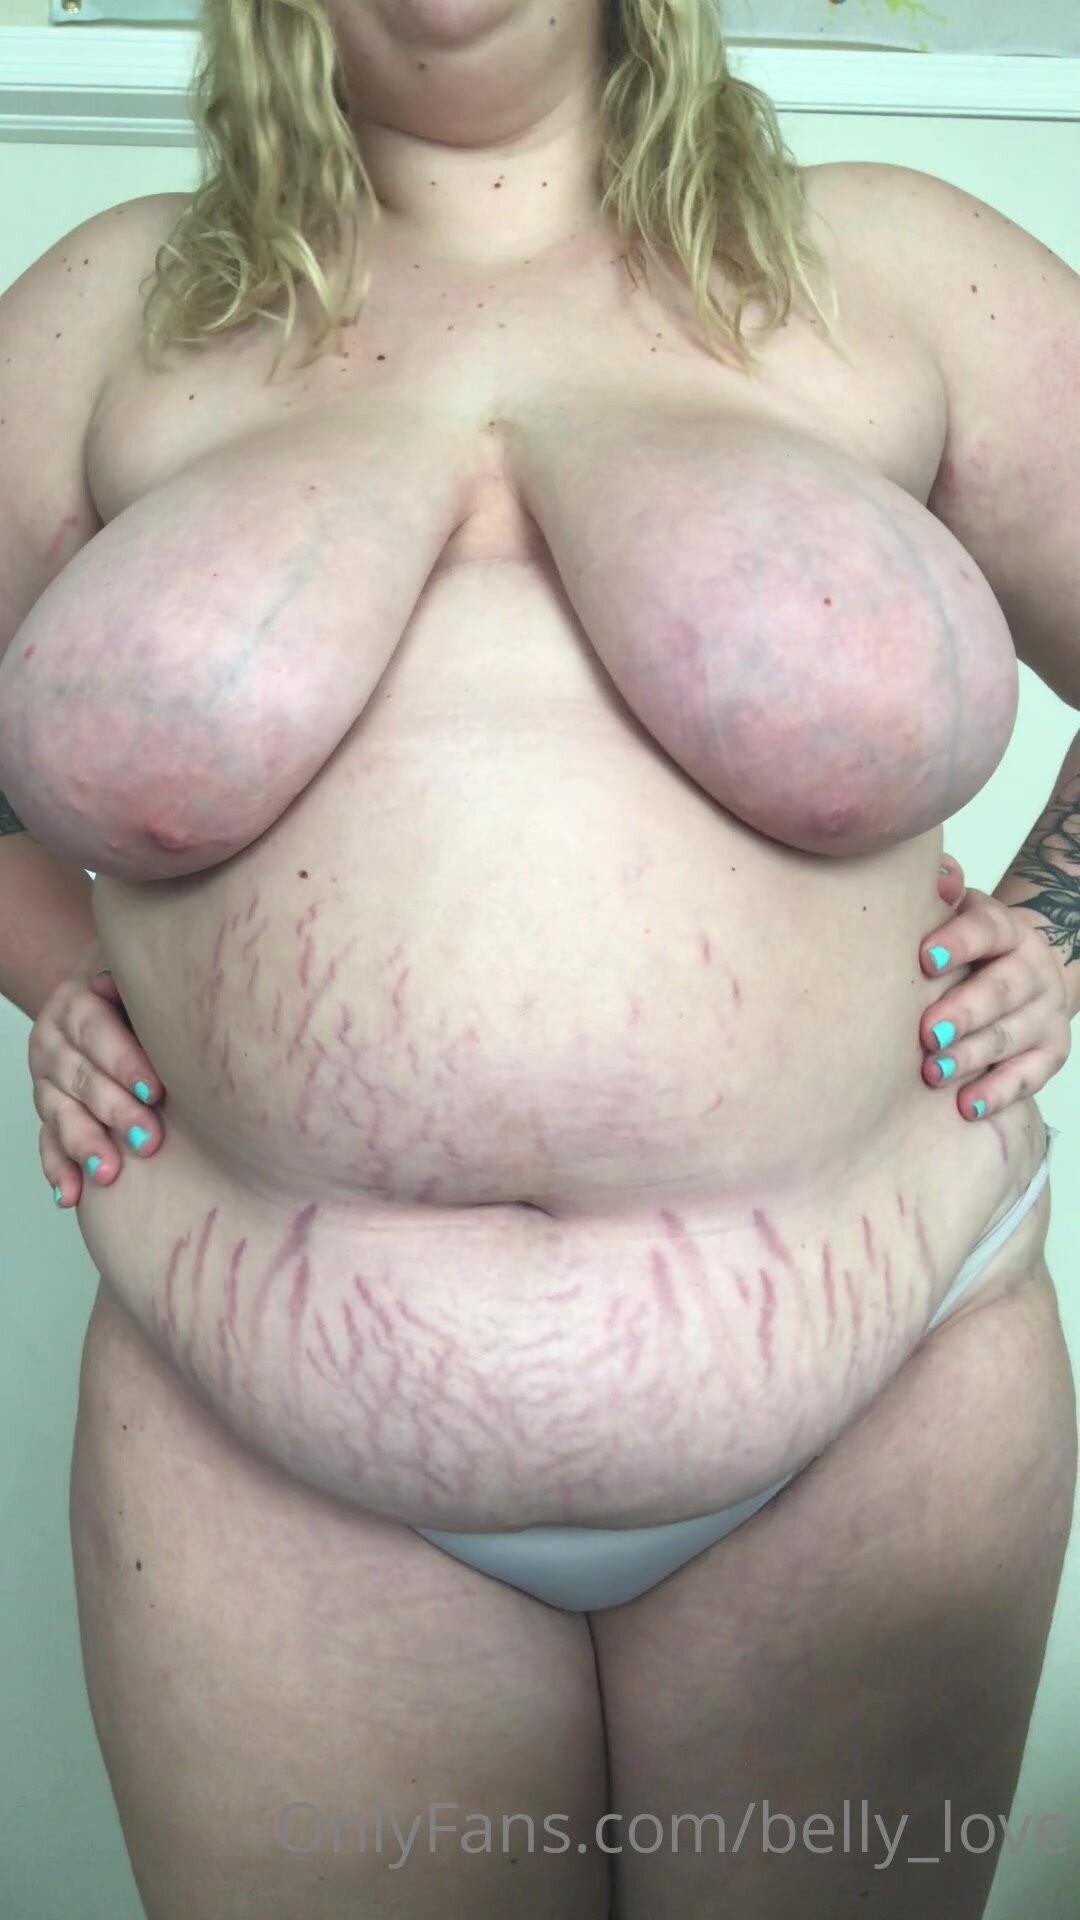 Bbw Girl - Fat girl stretch marks 4 - ThisVid.com